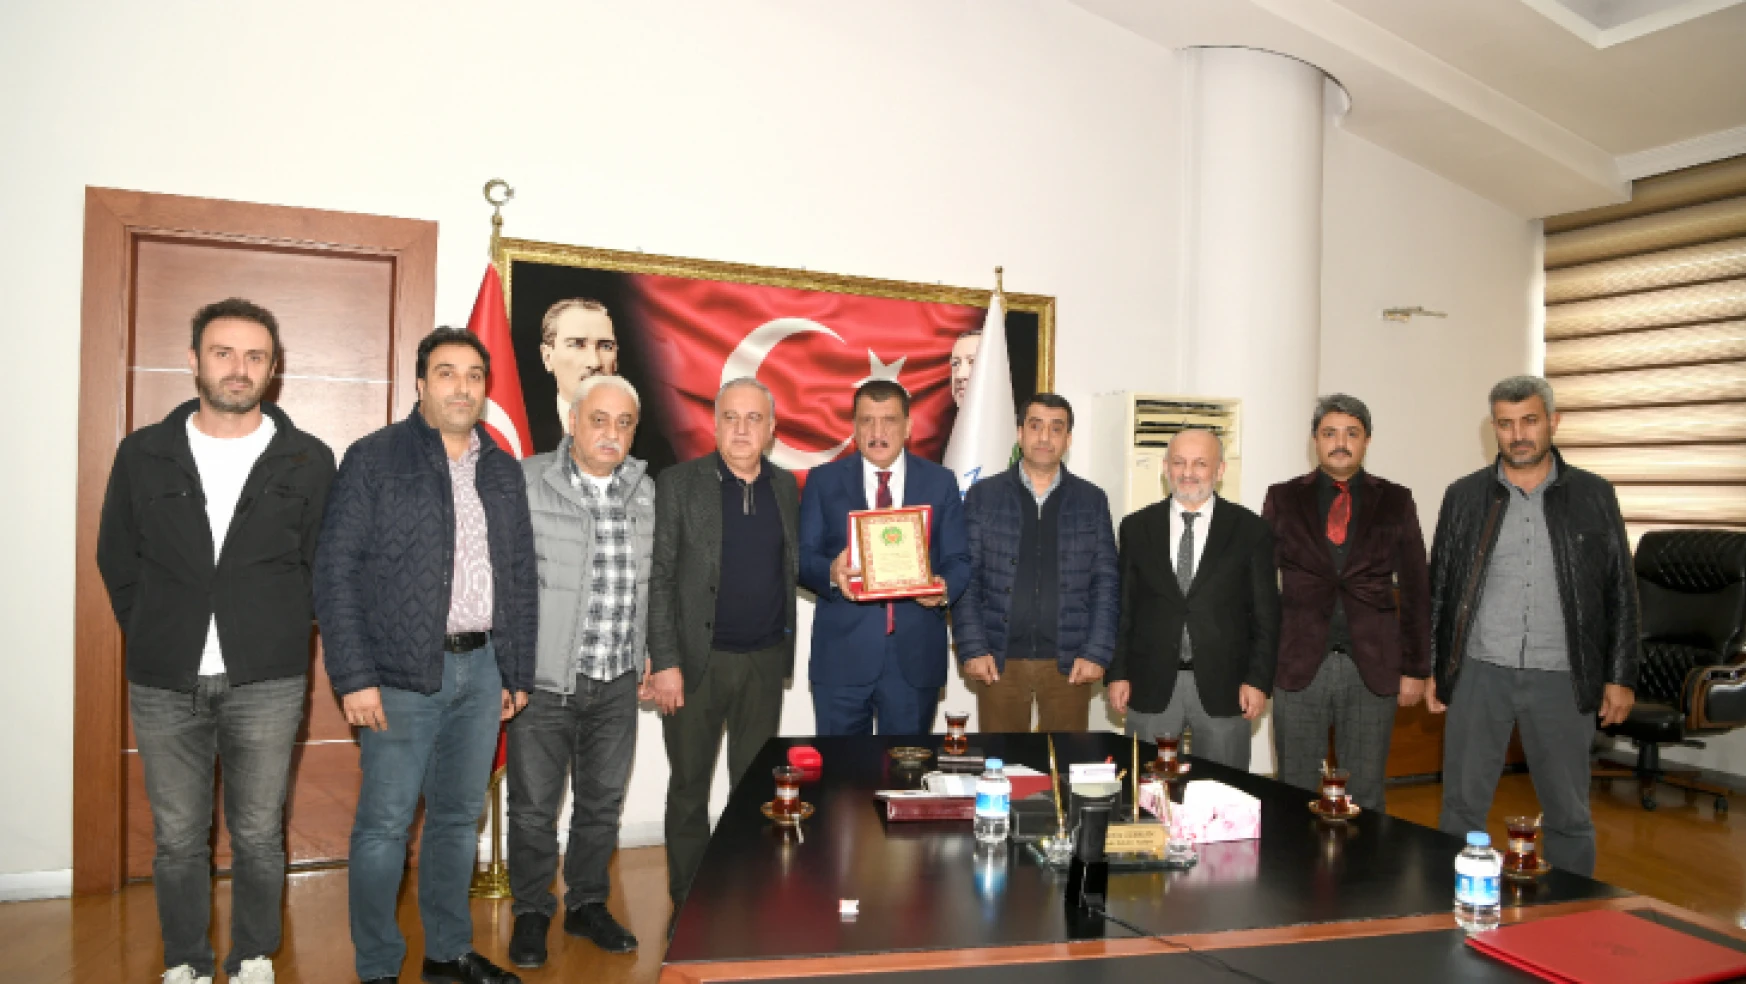 Kuyumcular Odası'ndan Başkan Gürkan'a teşekkür ziyareti